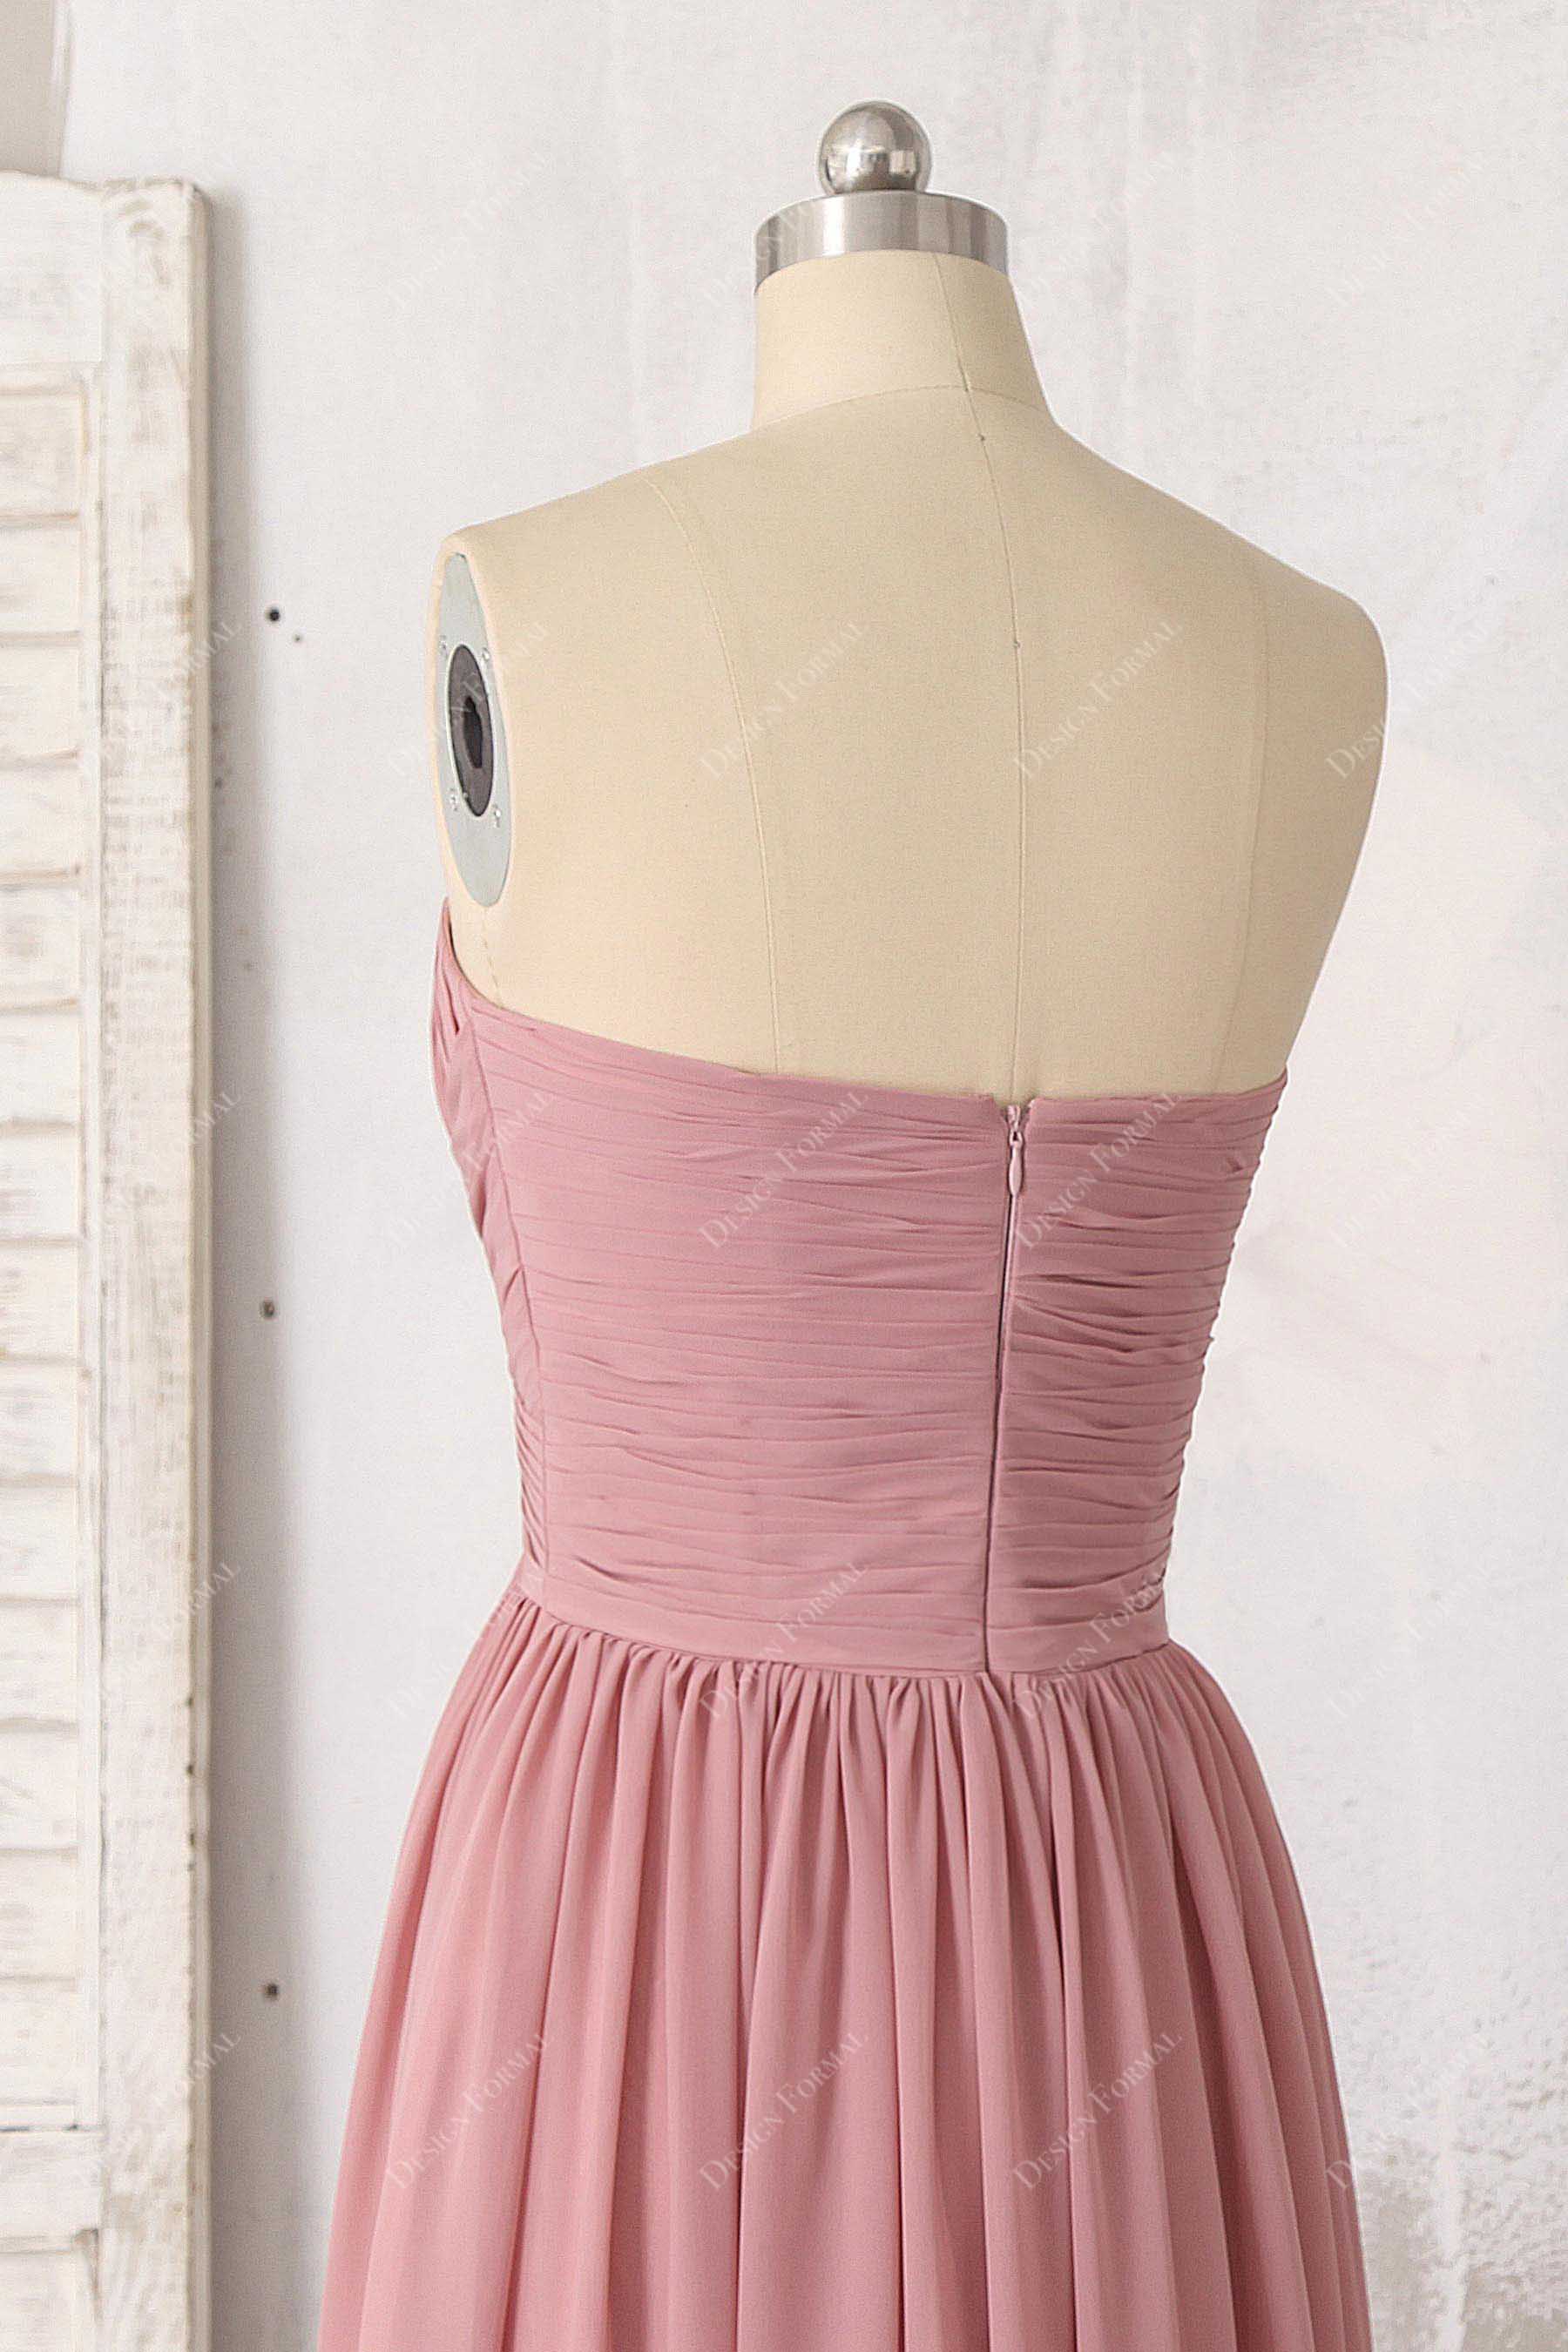 strapless dusty pink chiffon bridesmaid dress